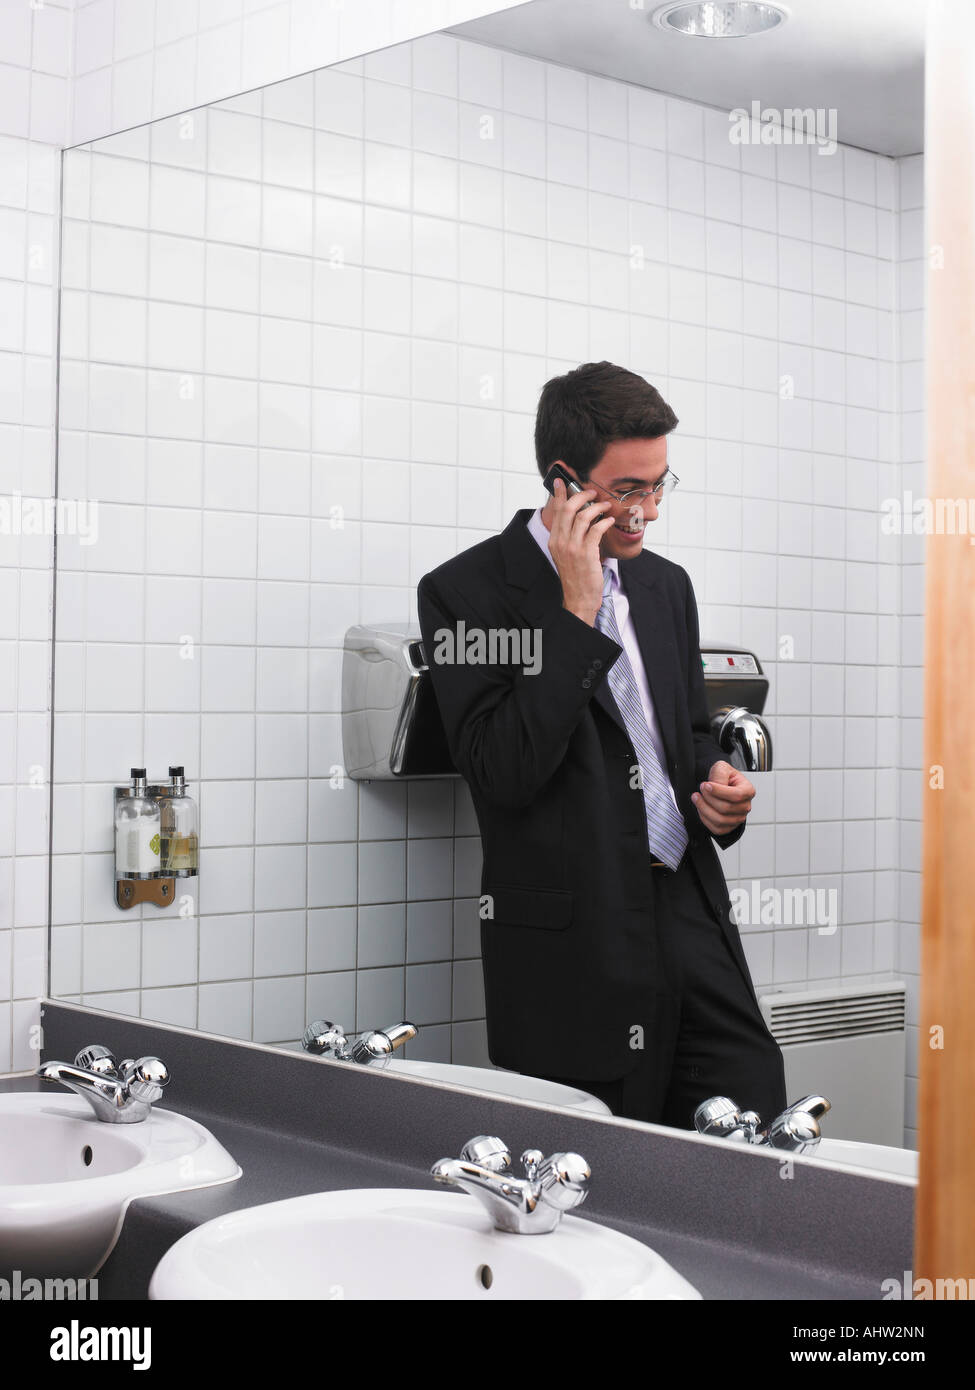 Bureau de l'homme reflétée dans un miroir de toilette à l'aide de mobile phone Banque D'Images